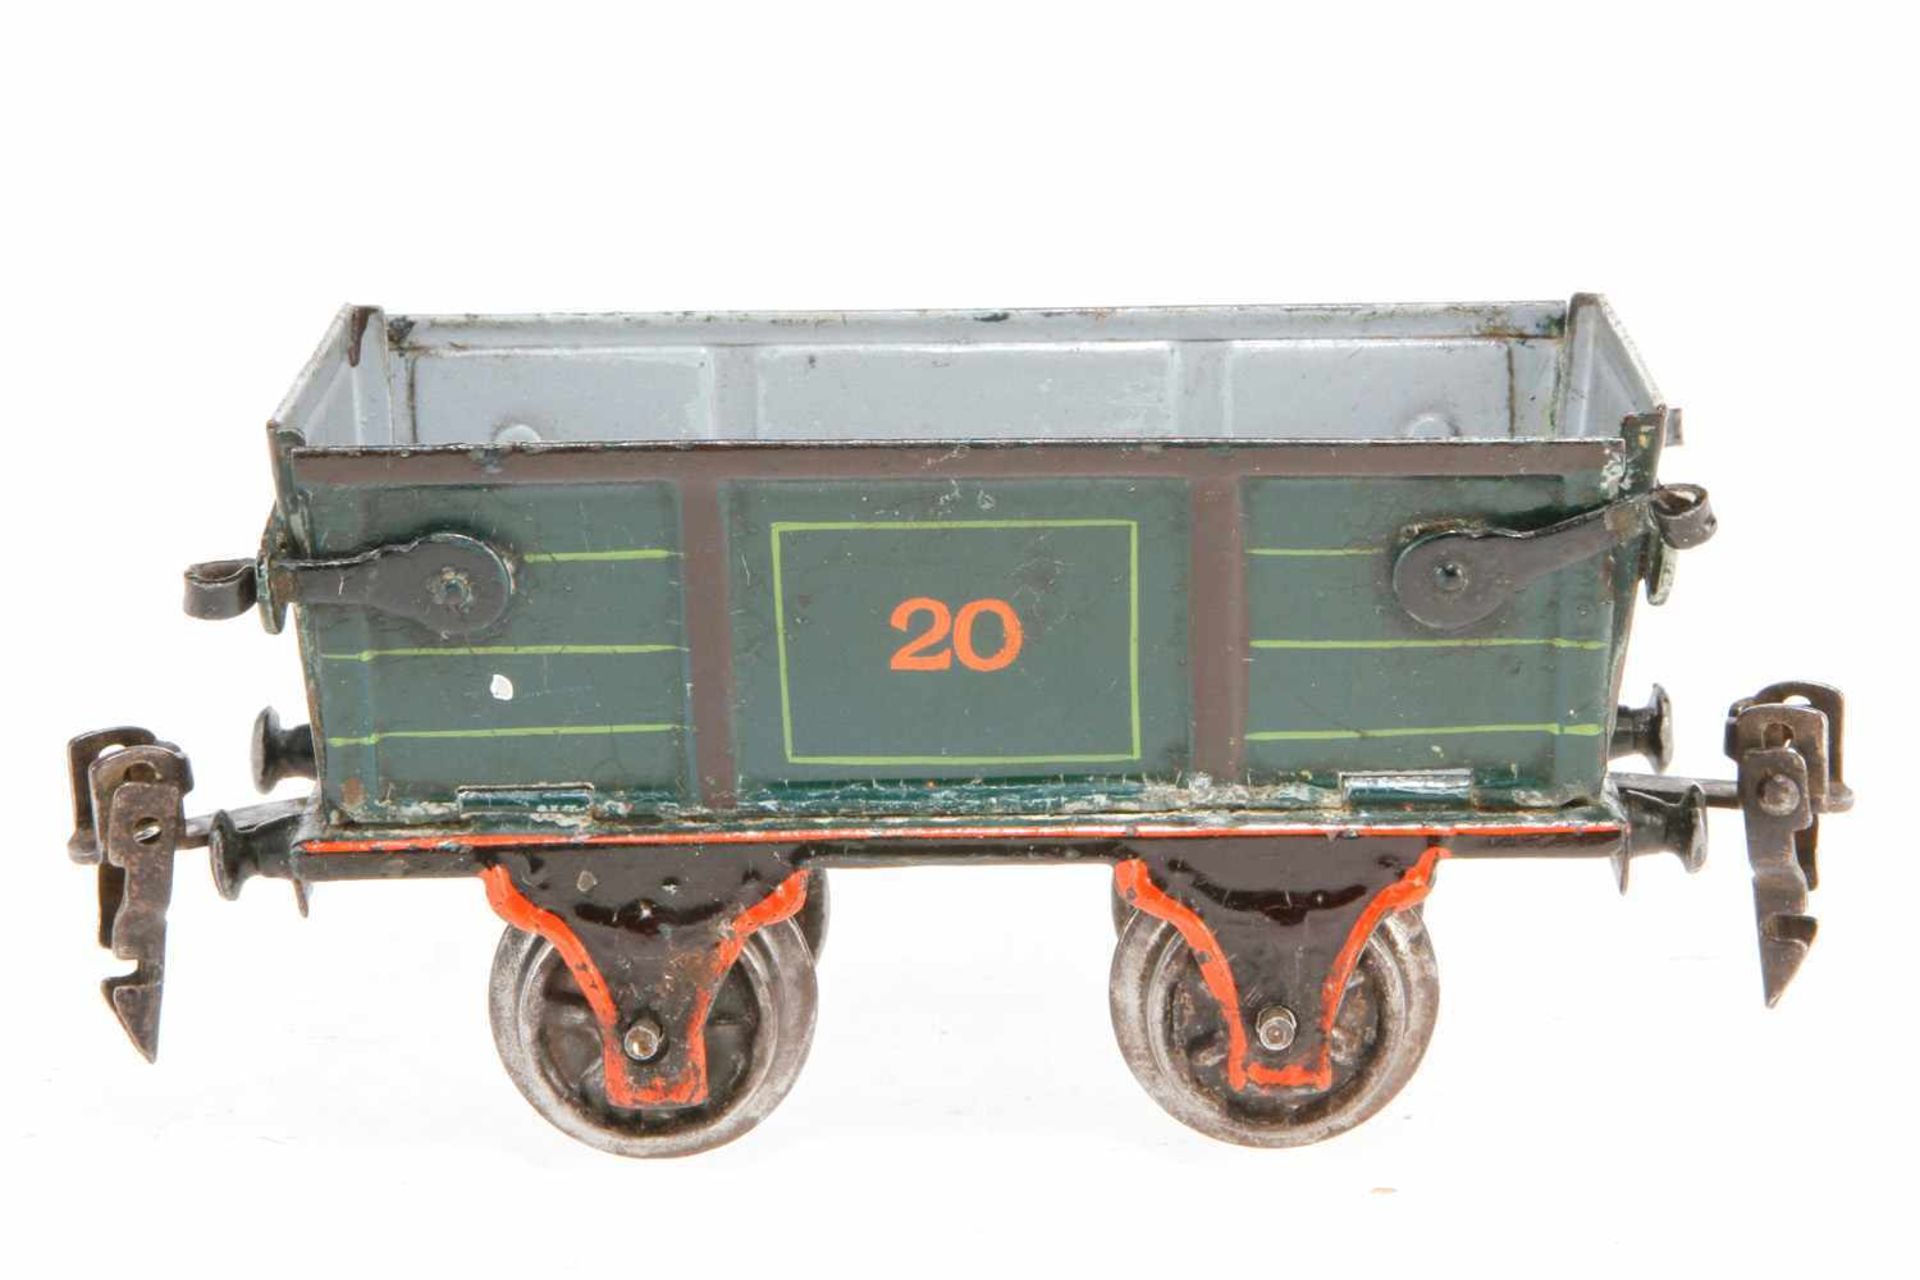 Märklin Rübenwagen "20" 1832, S 0, uralt, HL, mit abklappbaren Seitenwänden, LS und gealterter Lack,